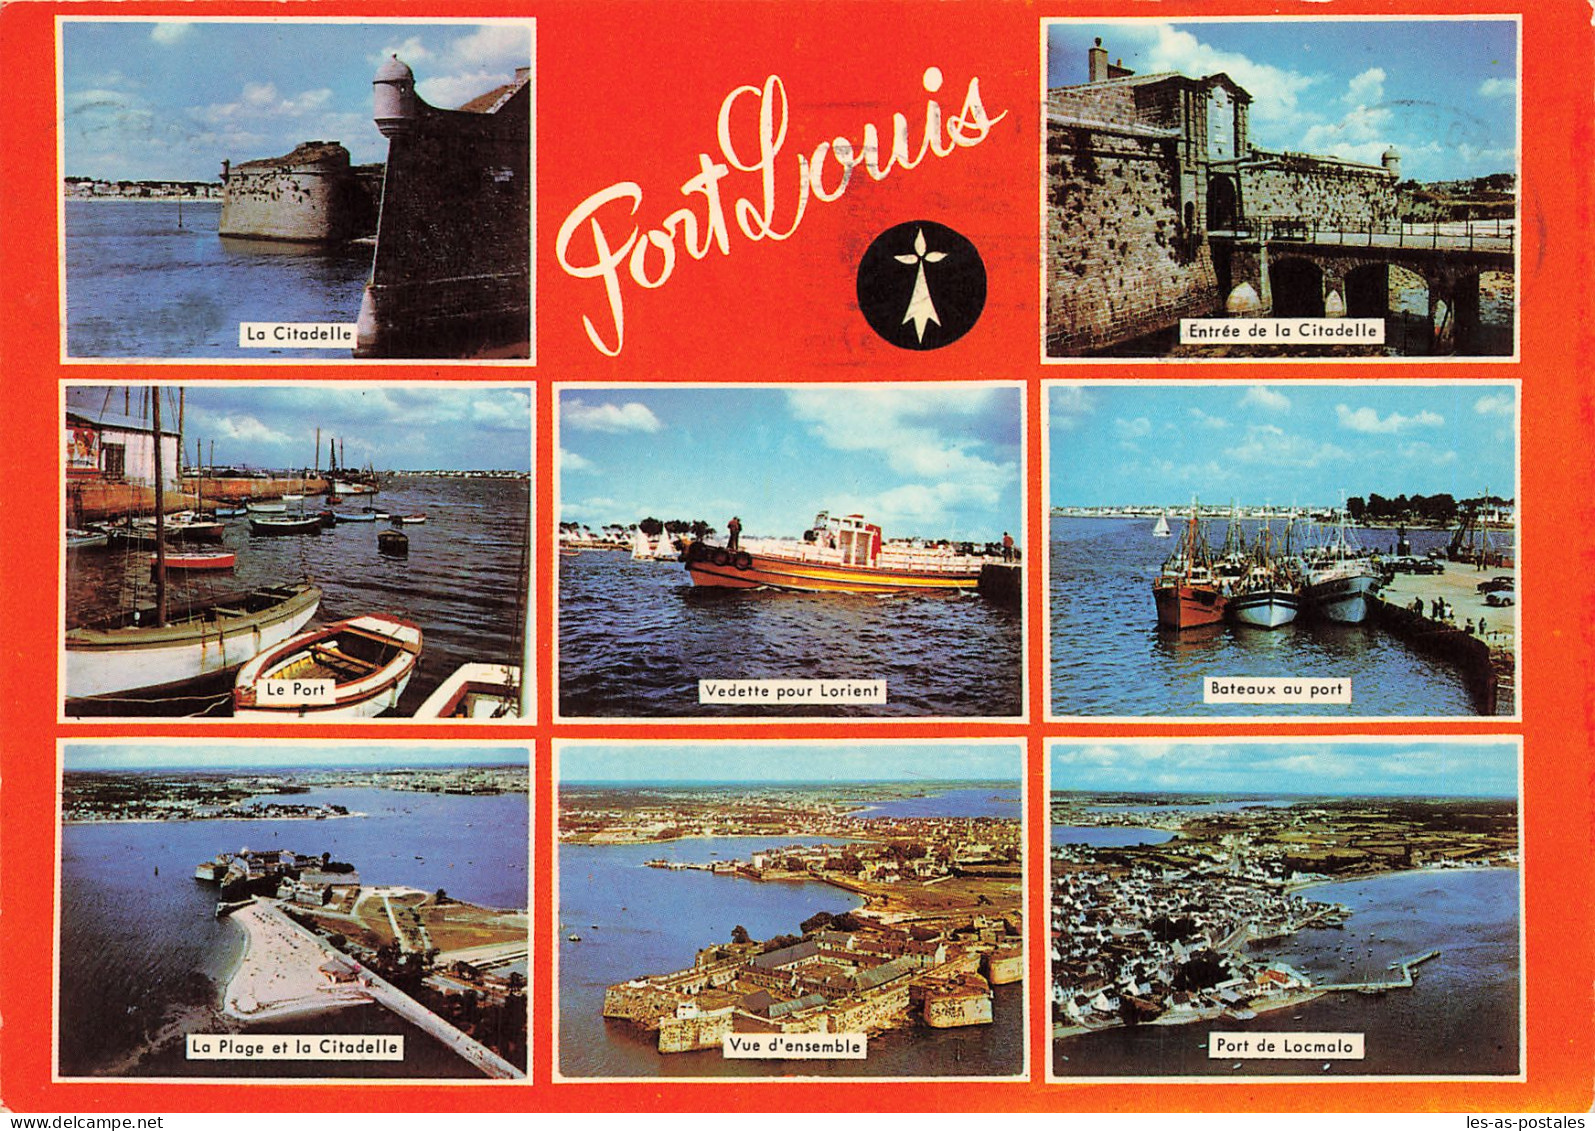 56 PORT LOUIS - Port Louis